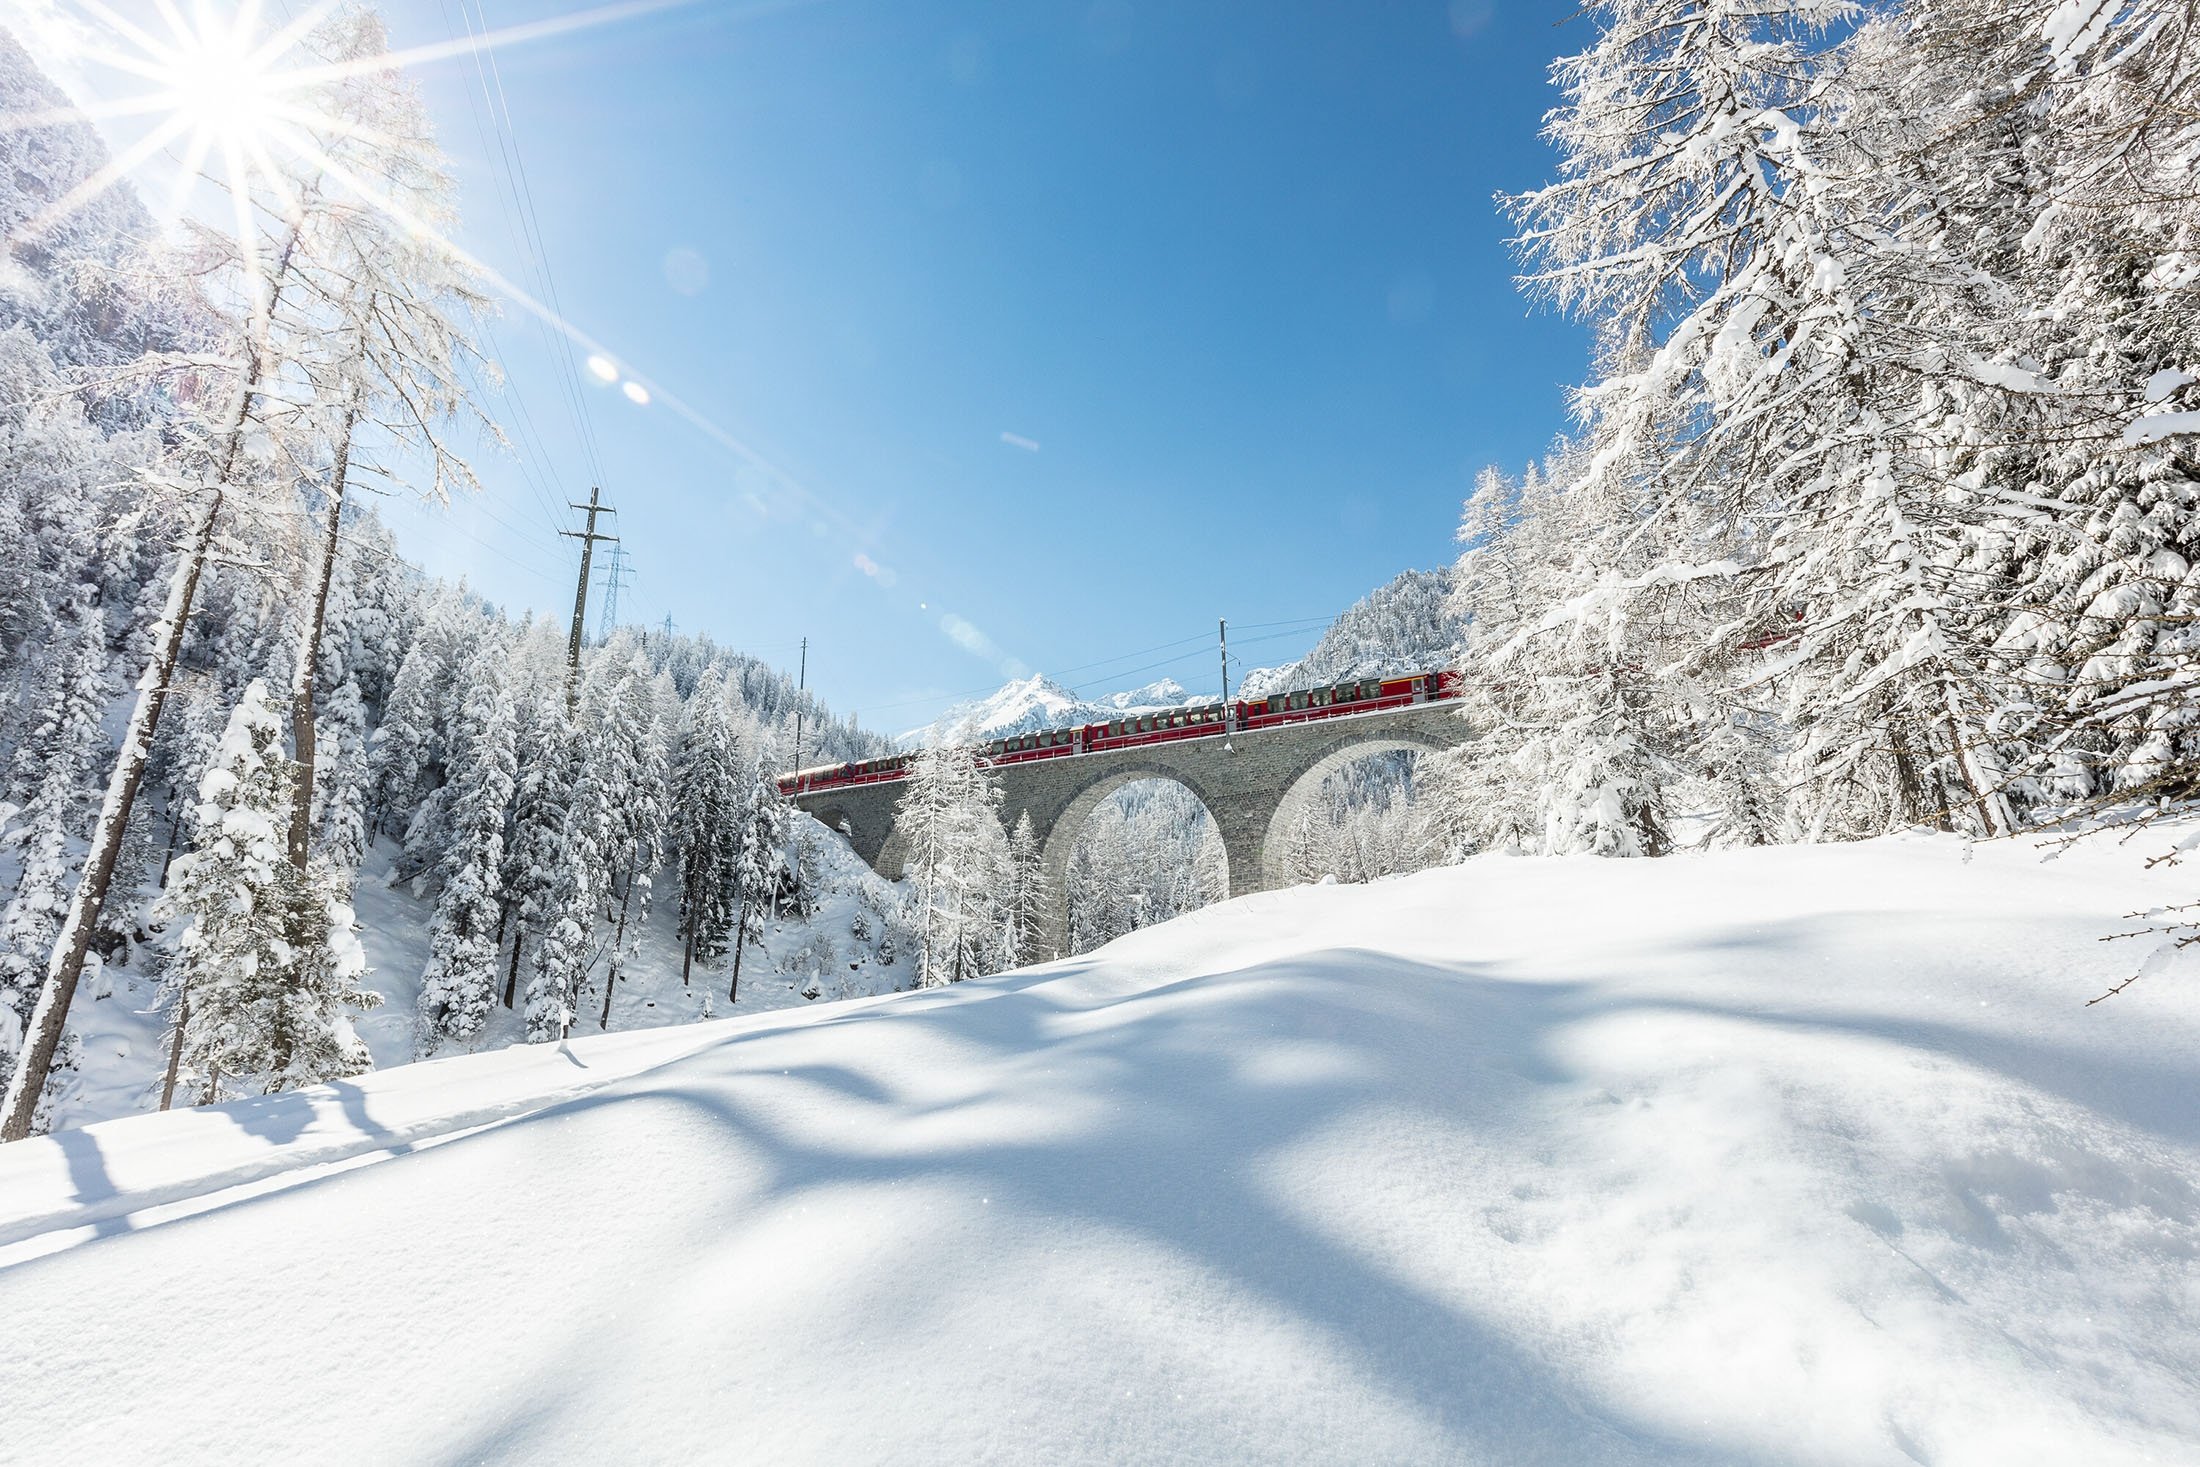 Wer rechtzeitig eine Fahrt mit der Bernina Express Bahn unternimmt, wird mit einem fantastischen Winterpanorama belohnt.  (Rhatische Bahn via dpa)